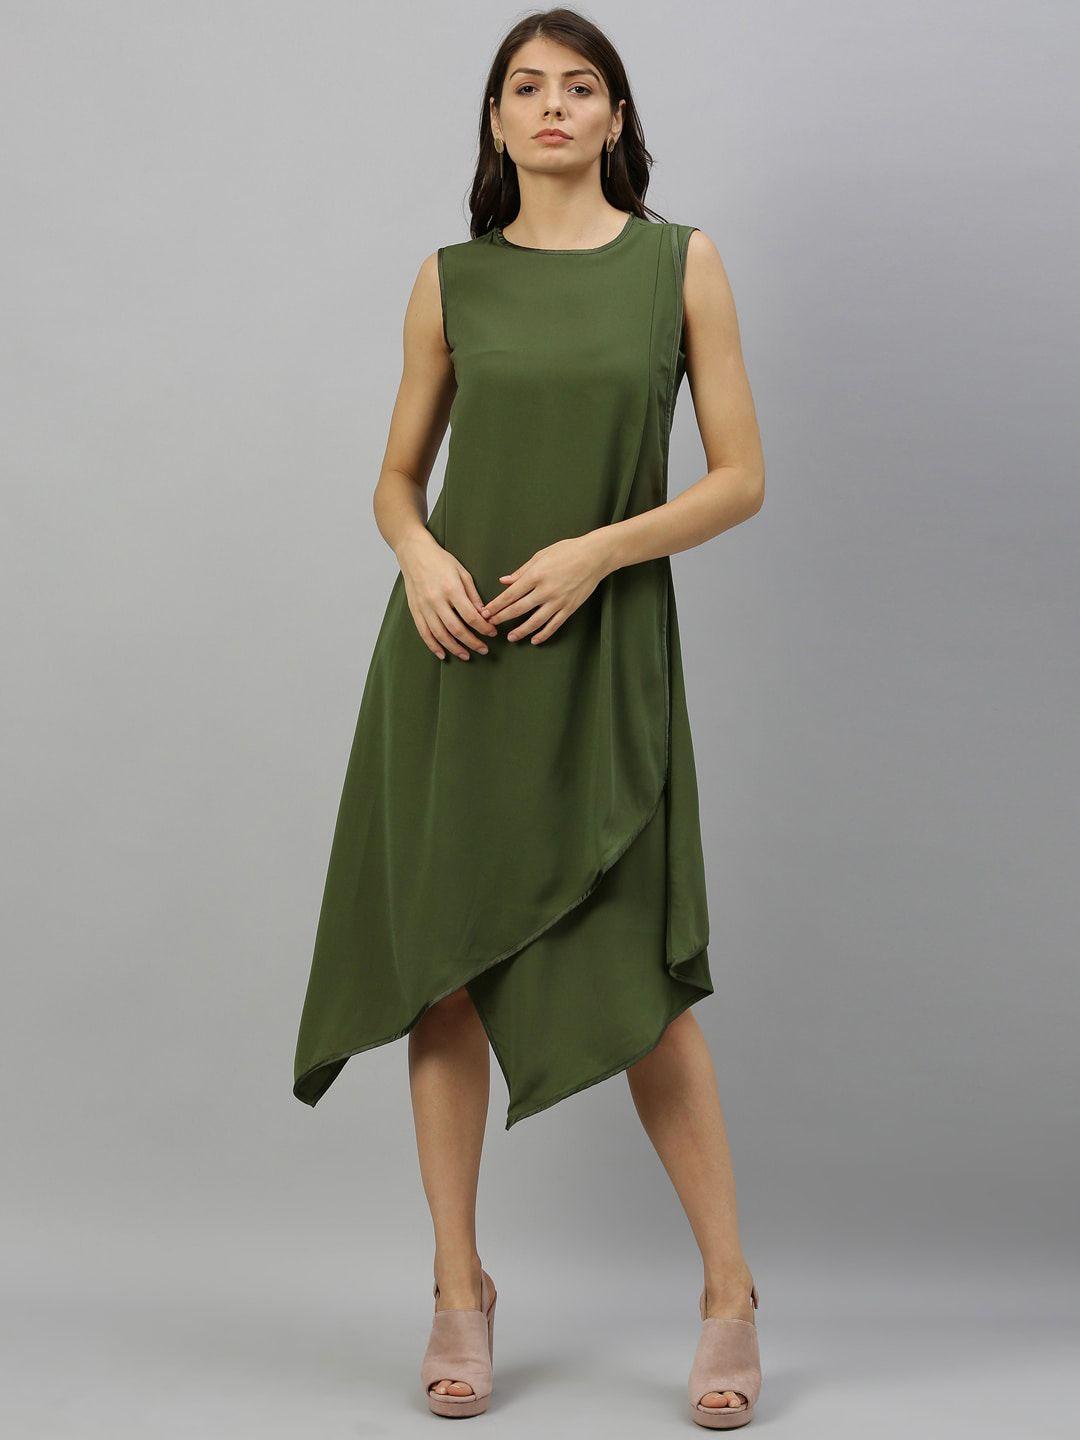 rareism women green solid a-line dress